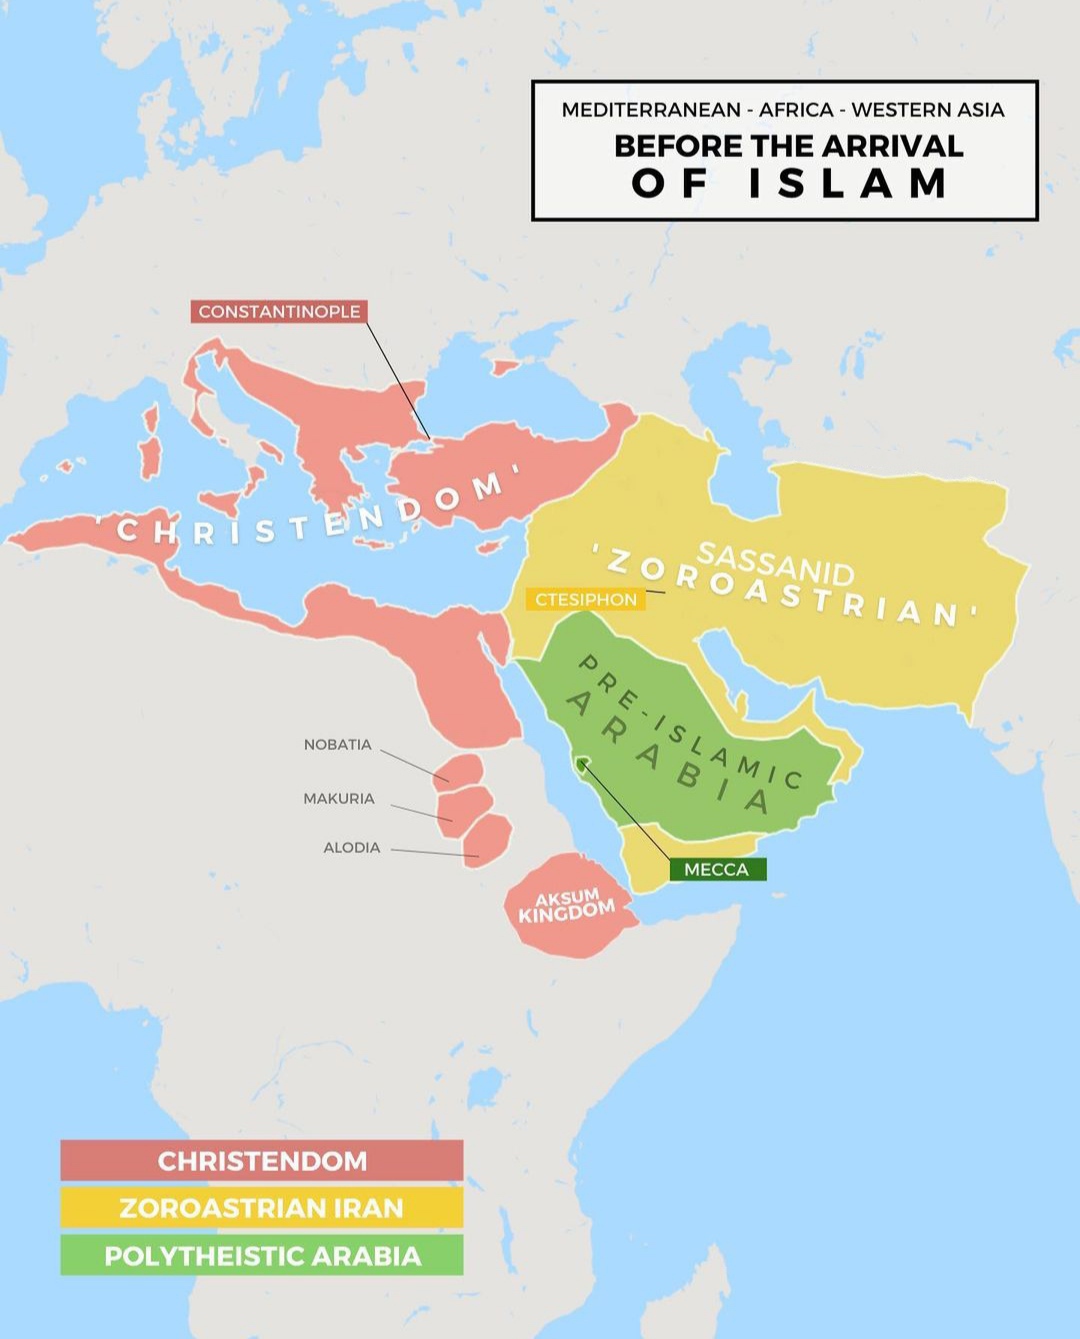 Jak wyglądał Bliski Wschód (dominujące religie i imperia) przed pojawieniem się islamu, 600 rok